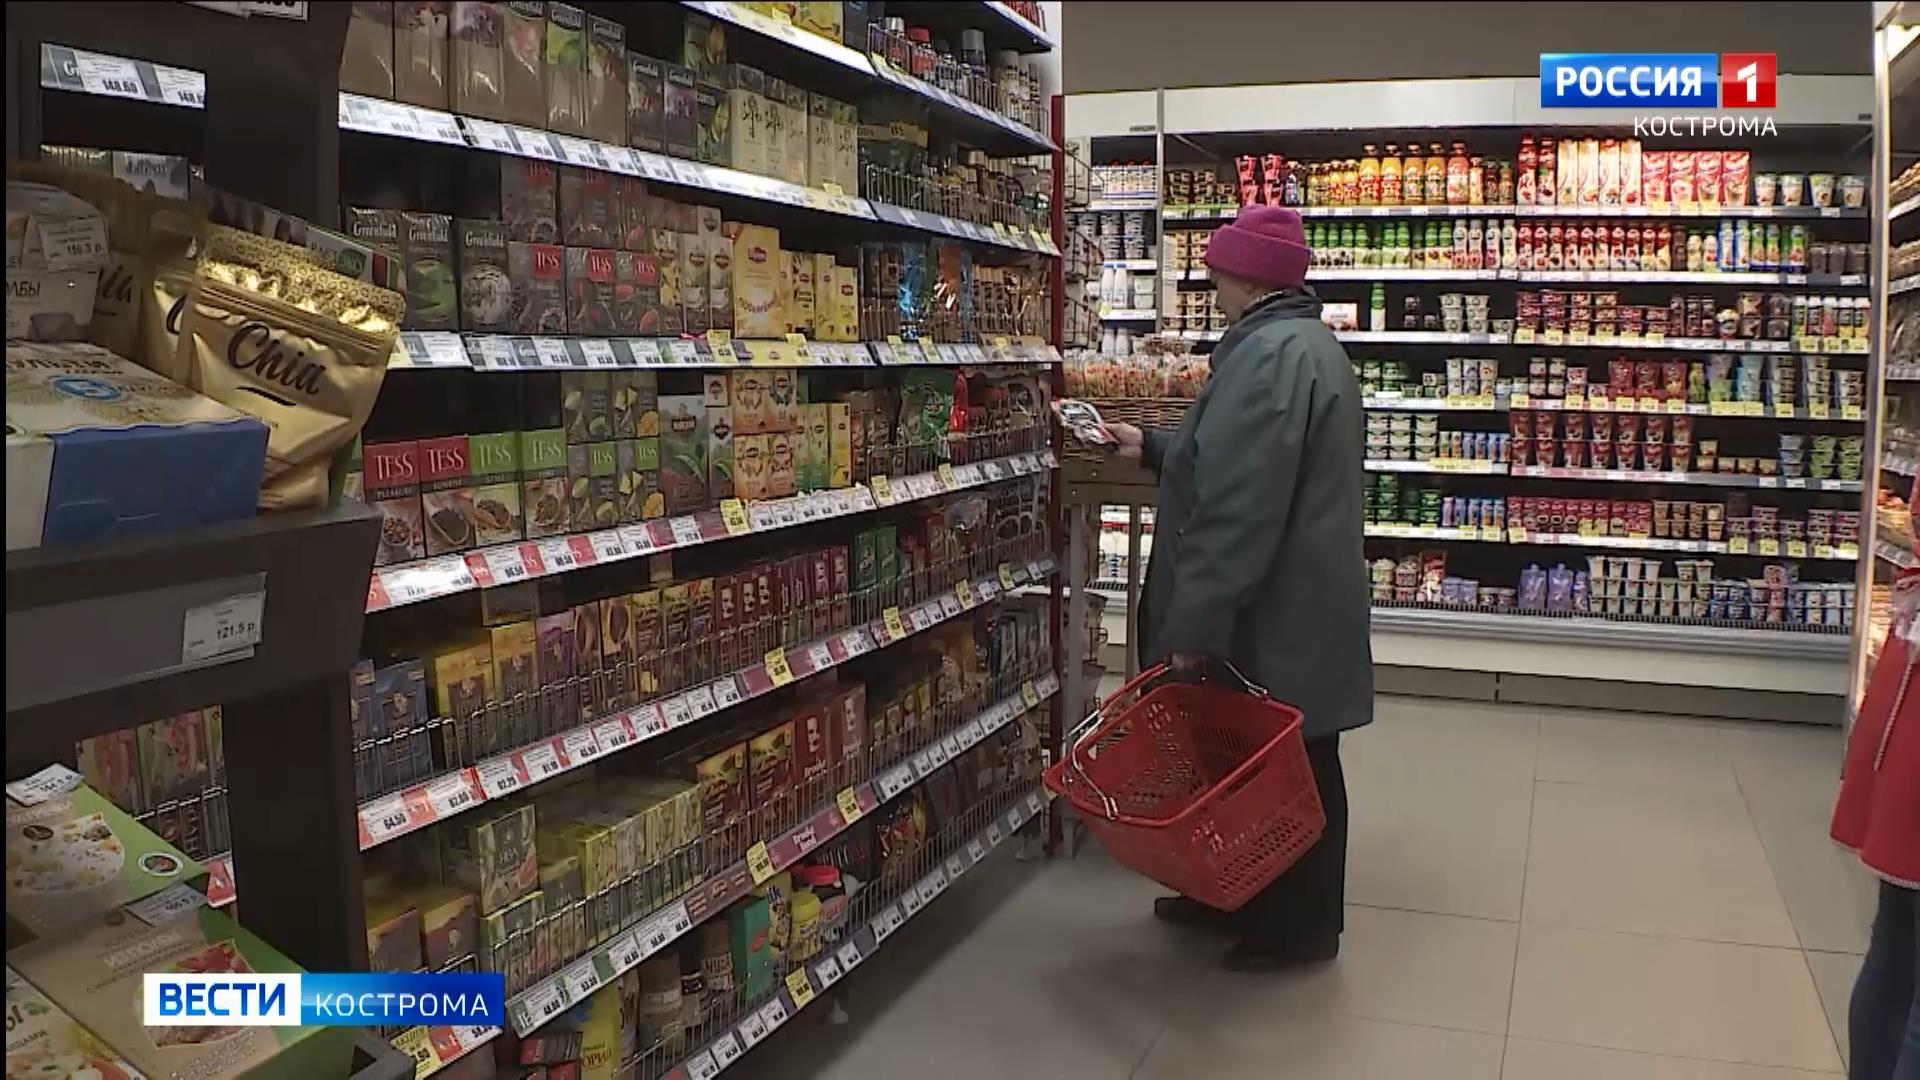 Костромская прокуратура нашла магазины с запредельными ценами на продукты